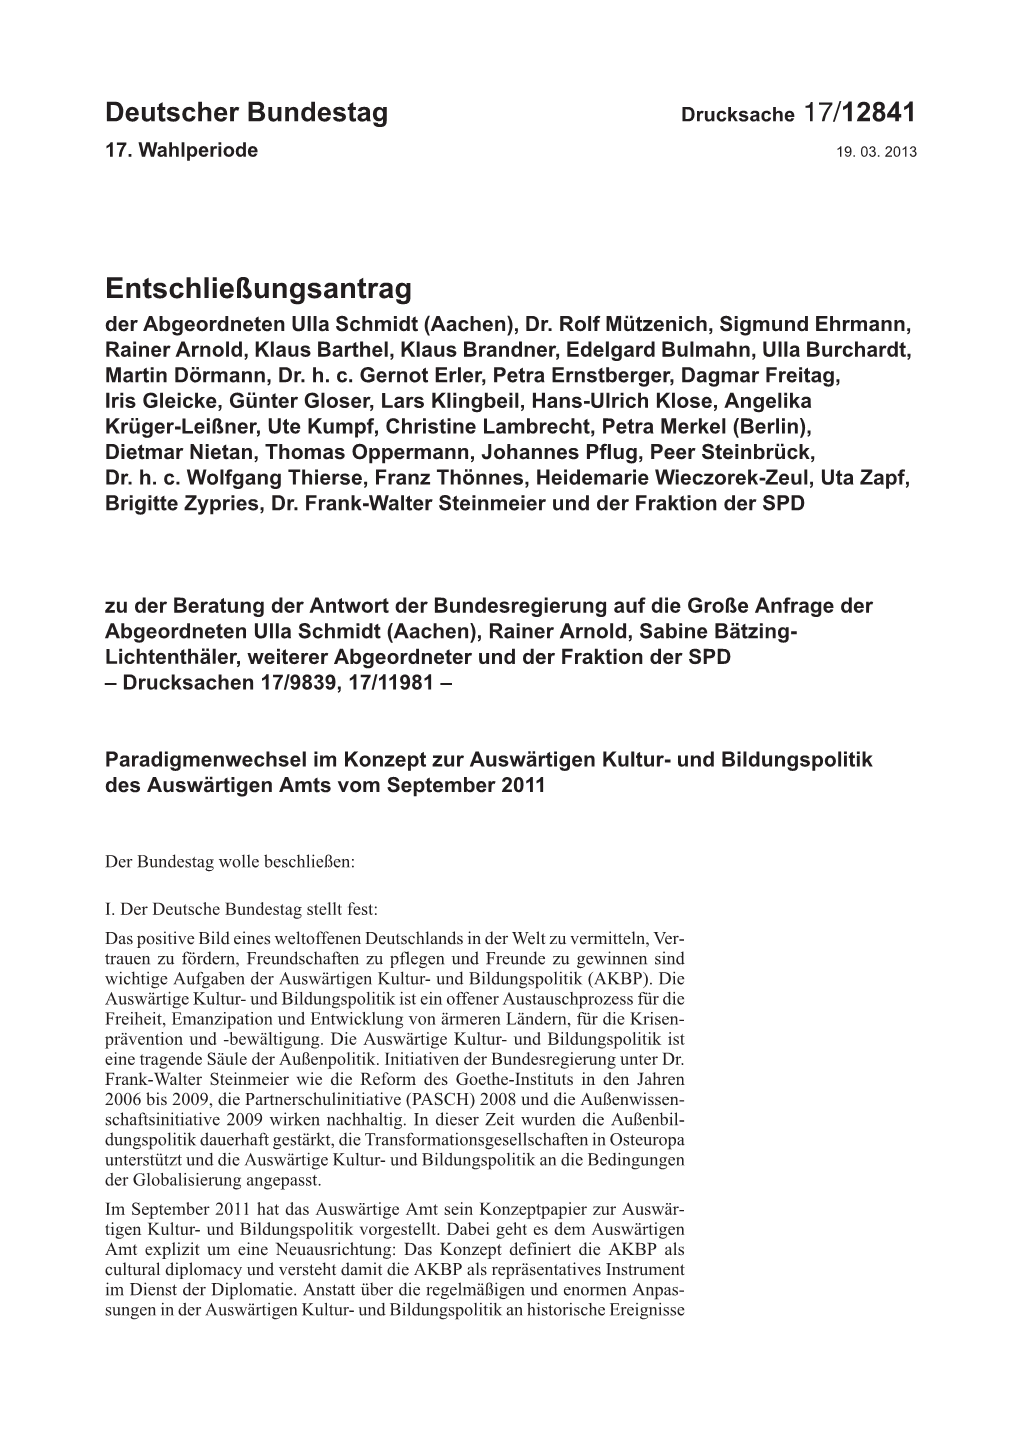 Entschließungsantrag Der Abgeordneten Ulla Schmidt (Aachen), Dr